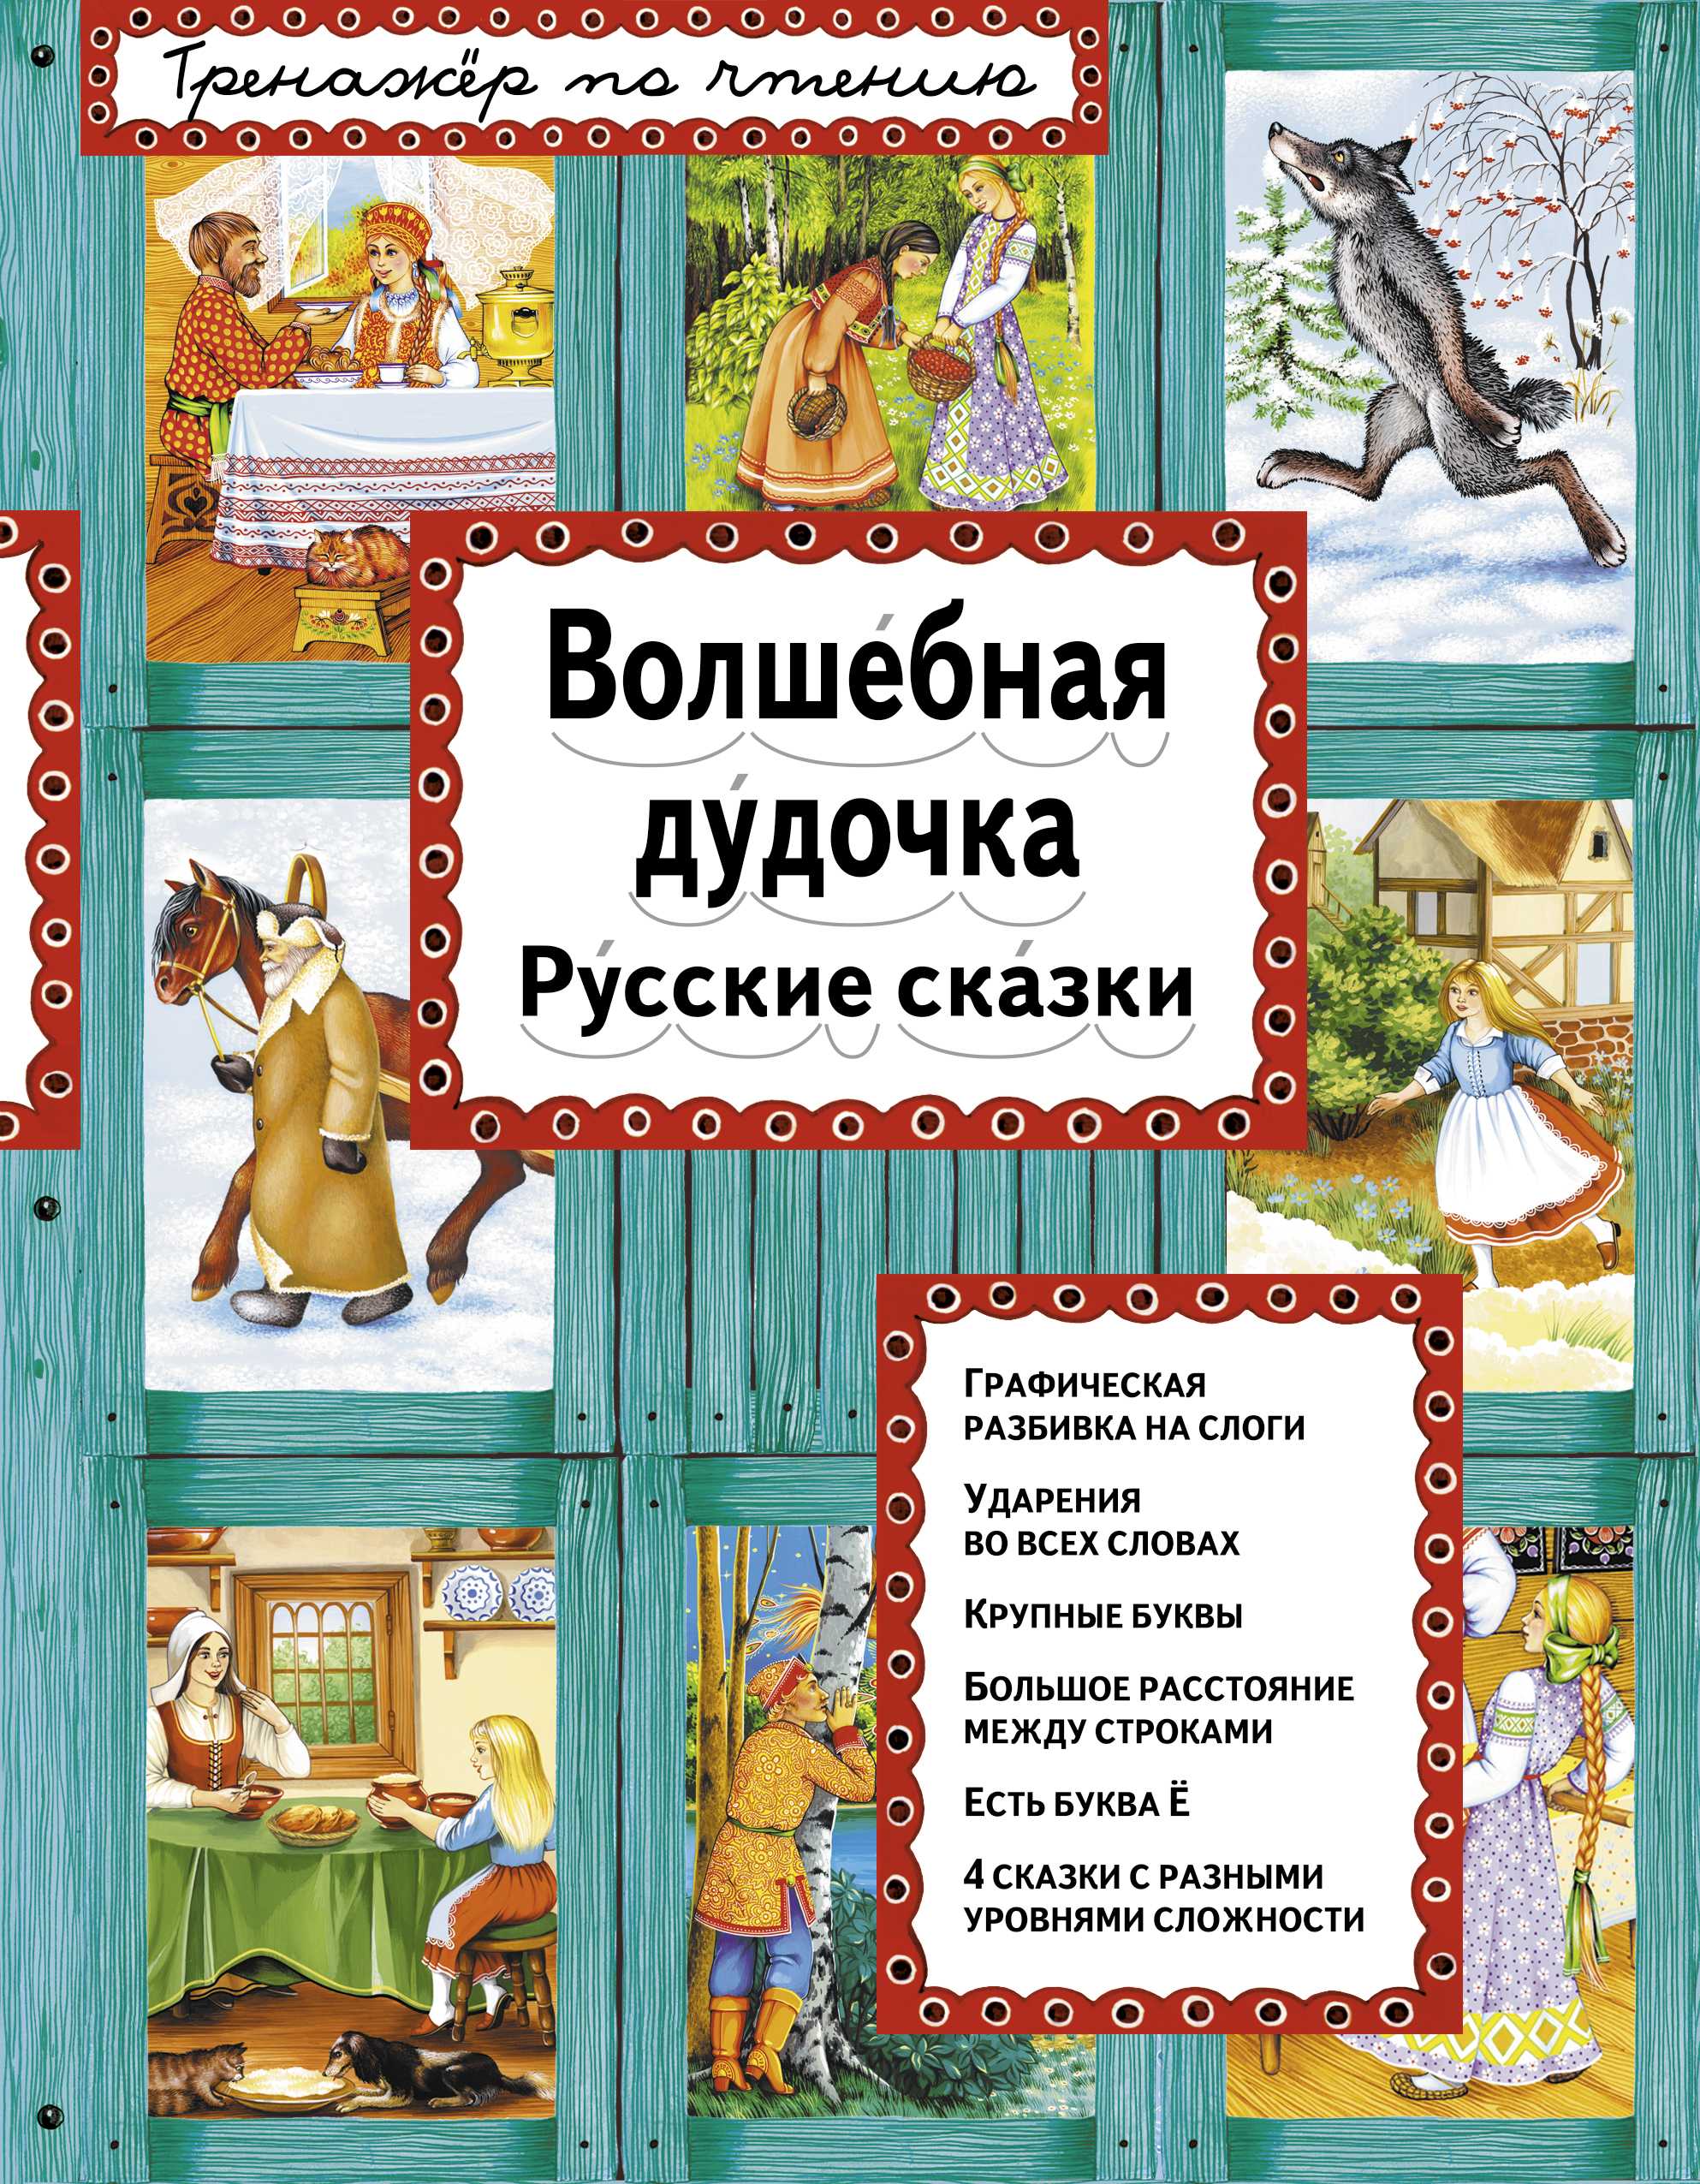 Волшебная дудочка - русская народная сказка, читать онлайн